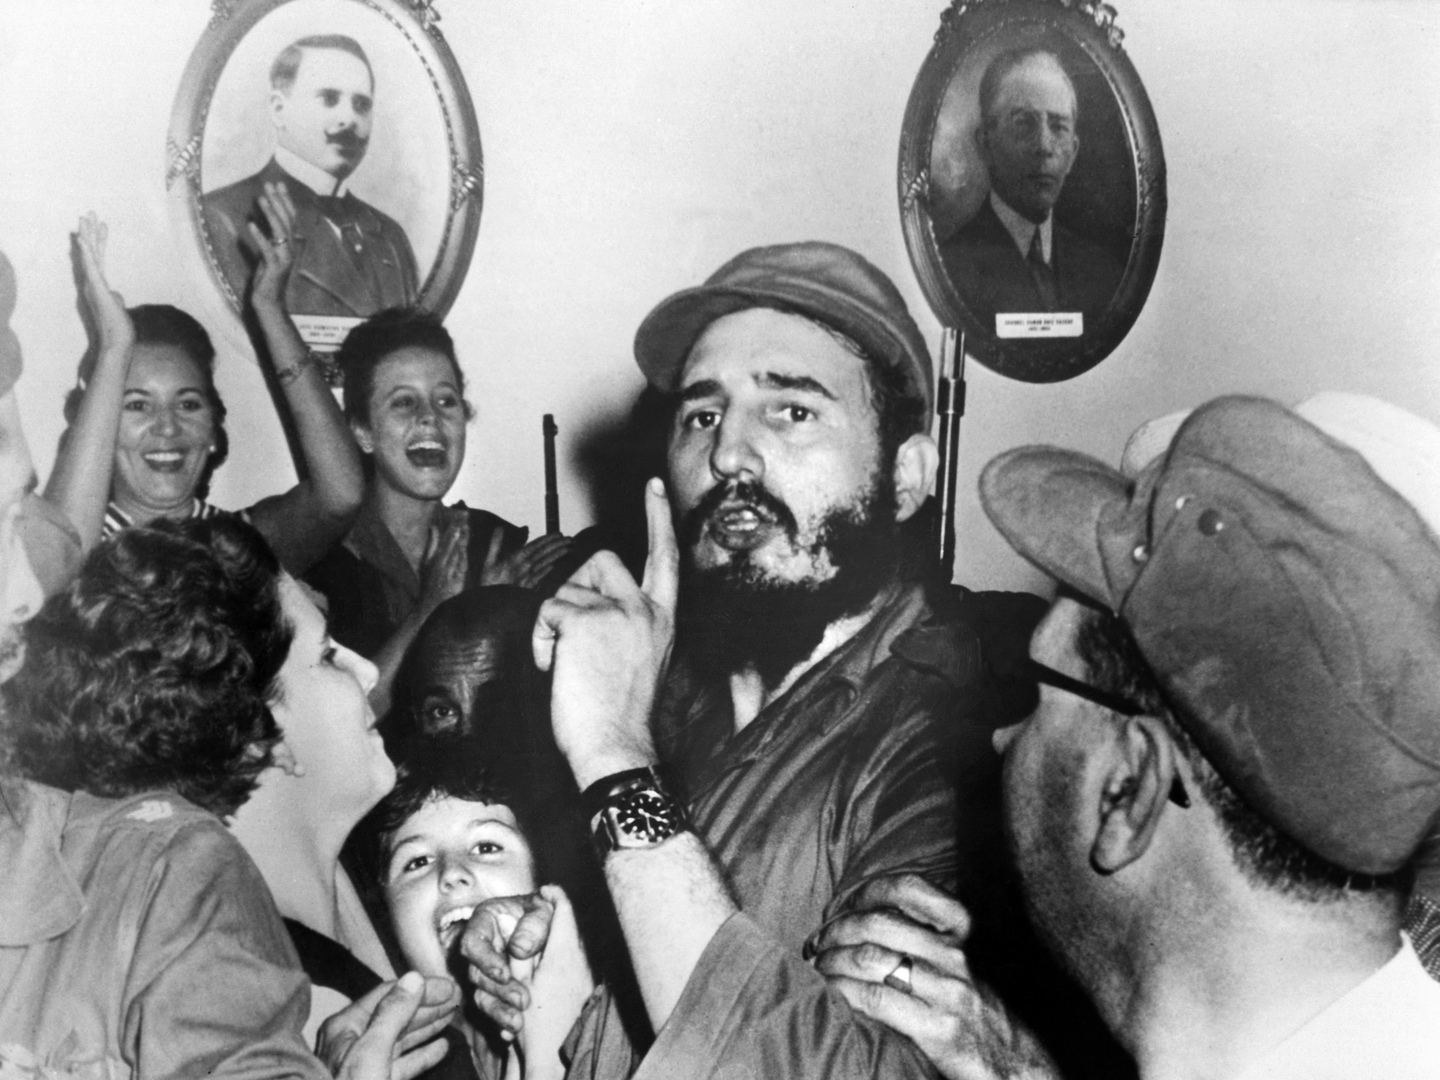 كيف نجا الزعيم الكوبي الراحل فيديل كاسترو من أكثر من 600 محاولة اغتيال على مدى 60 عاما؟